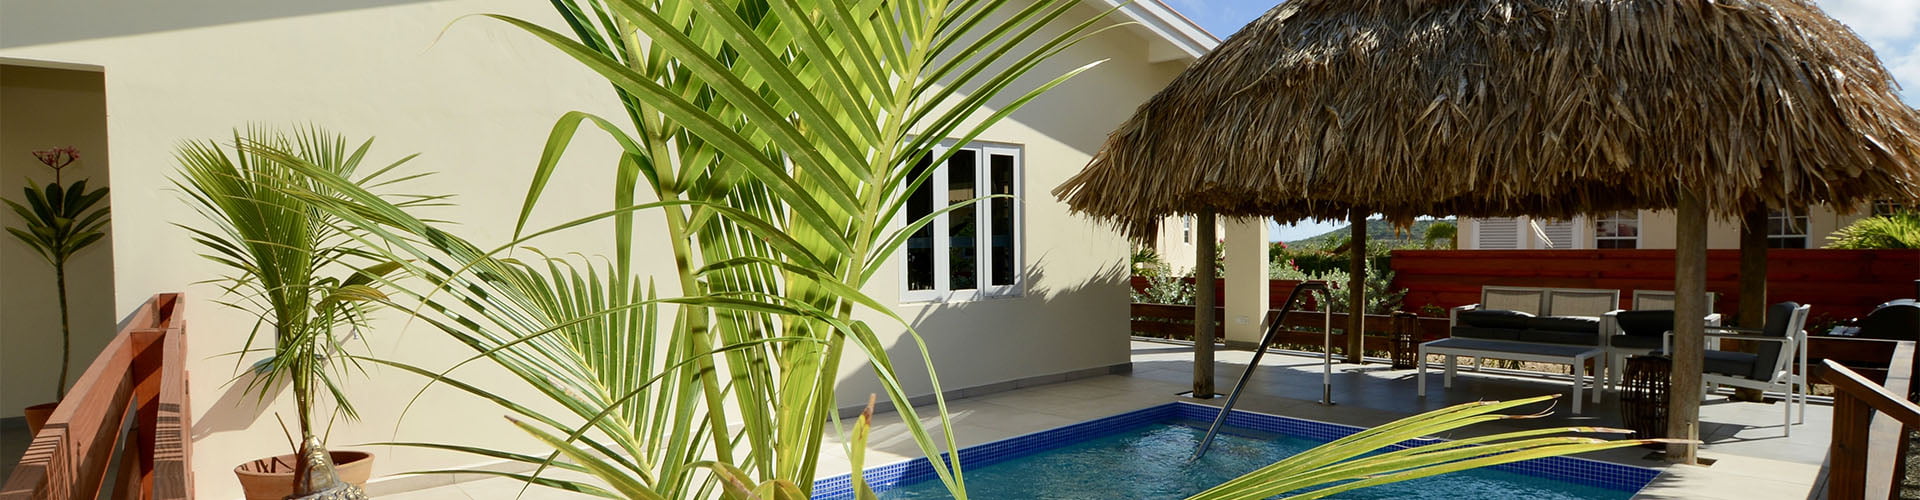 Mieten Sie eine günstige Villa mit Pool auf Curacao